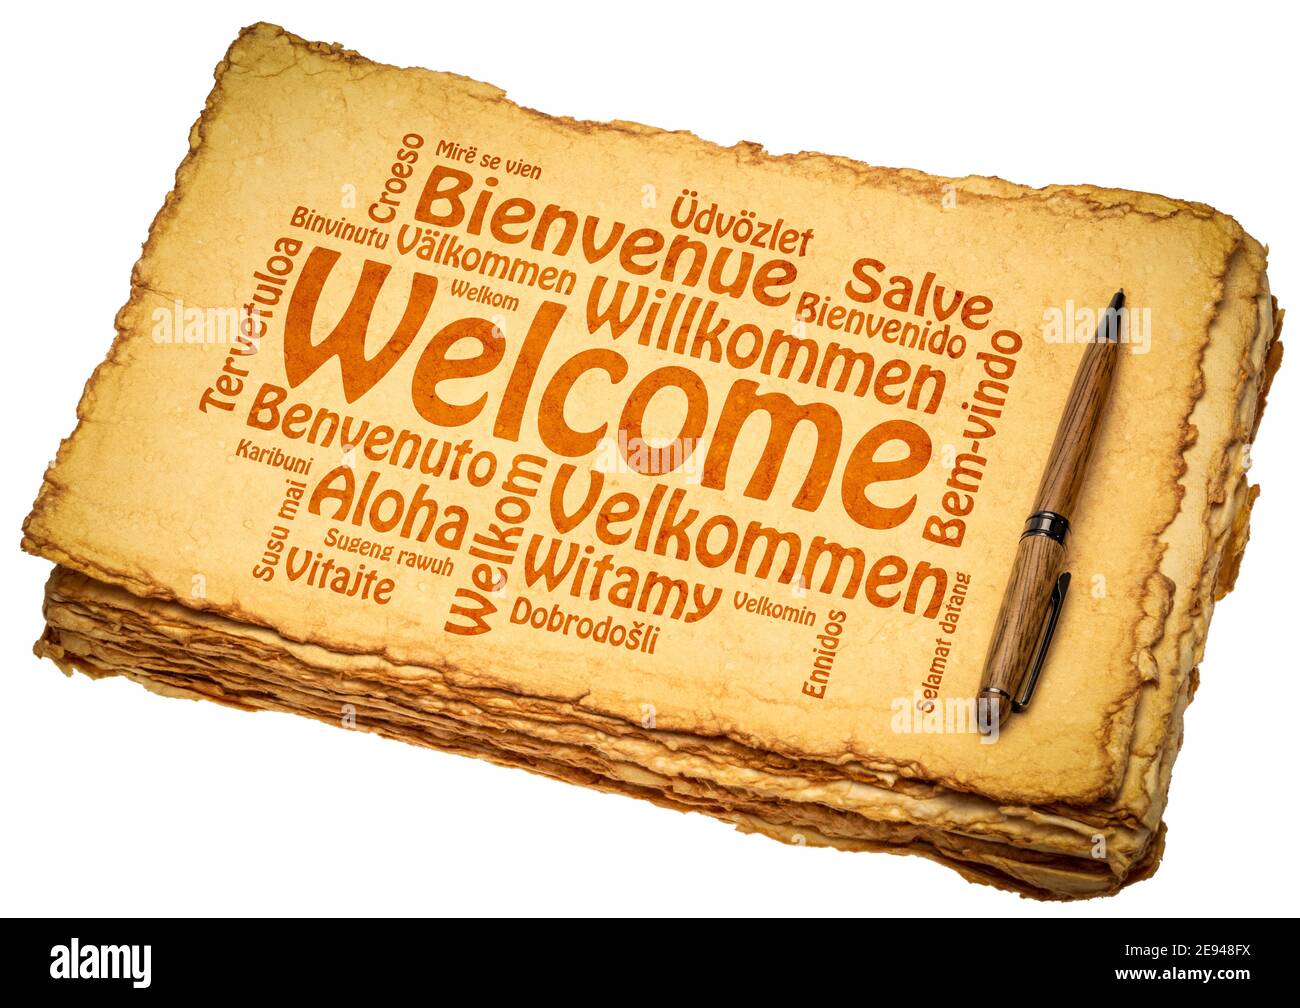 Willkommen in verschiedenen Sprachen - eine Wortwolke auf einem groben handgefertigten Papier, Grüße und Gastfreundschaft Konzept Stockfoto